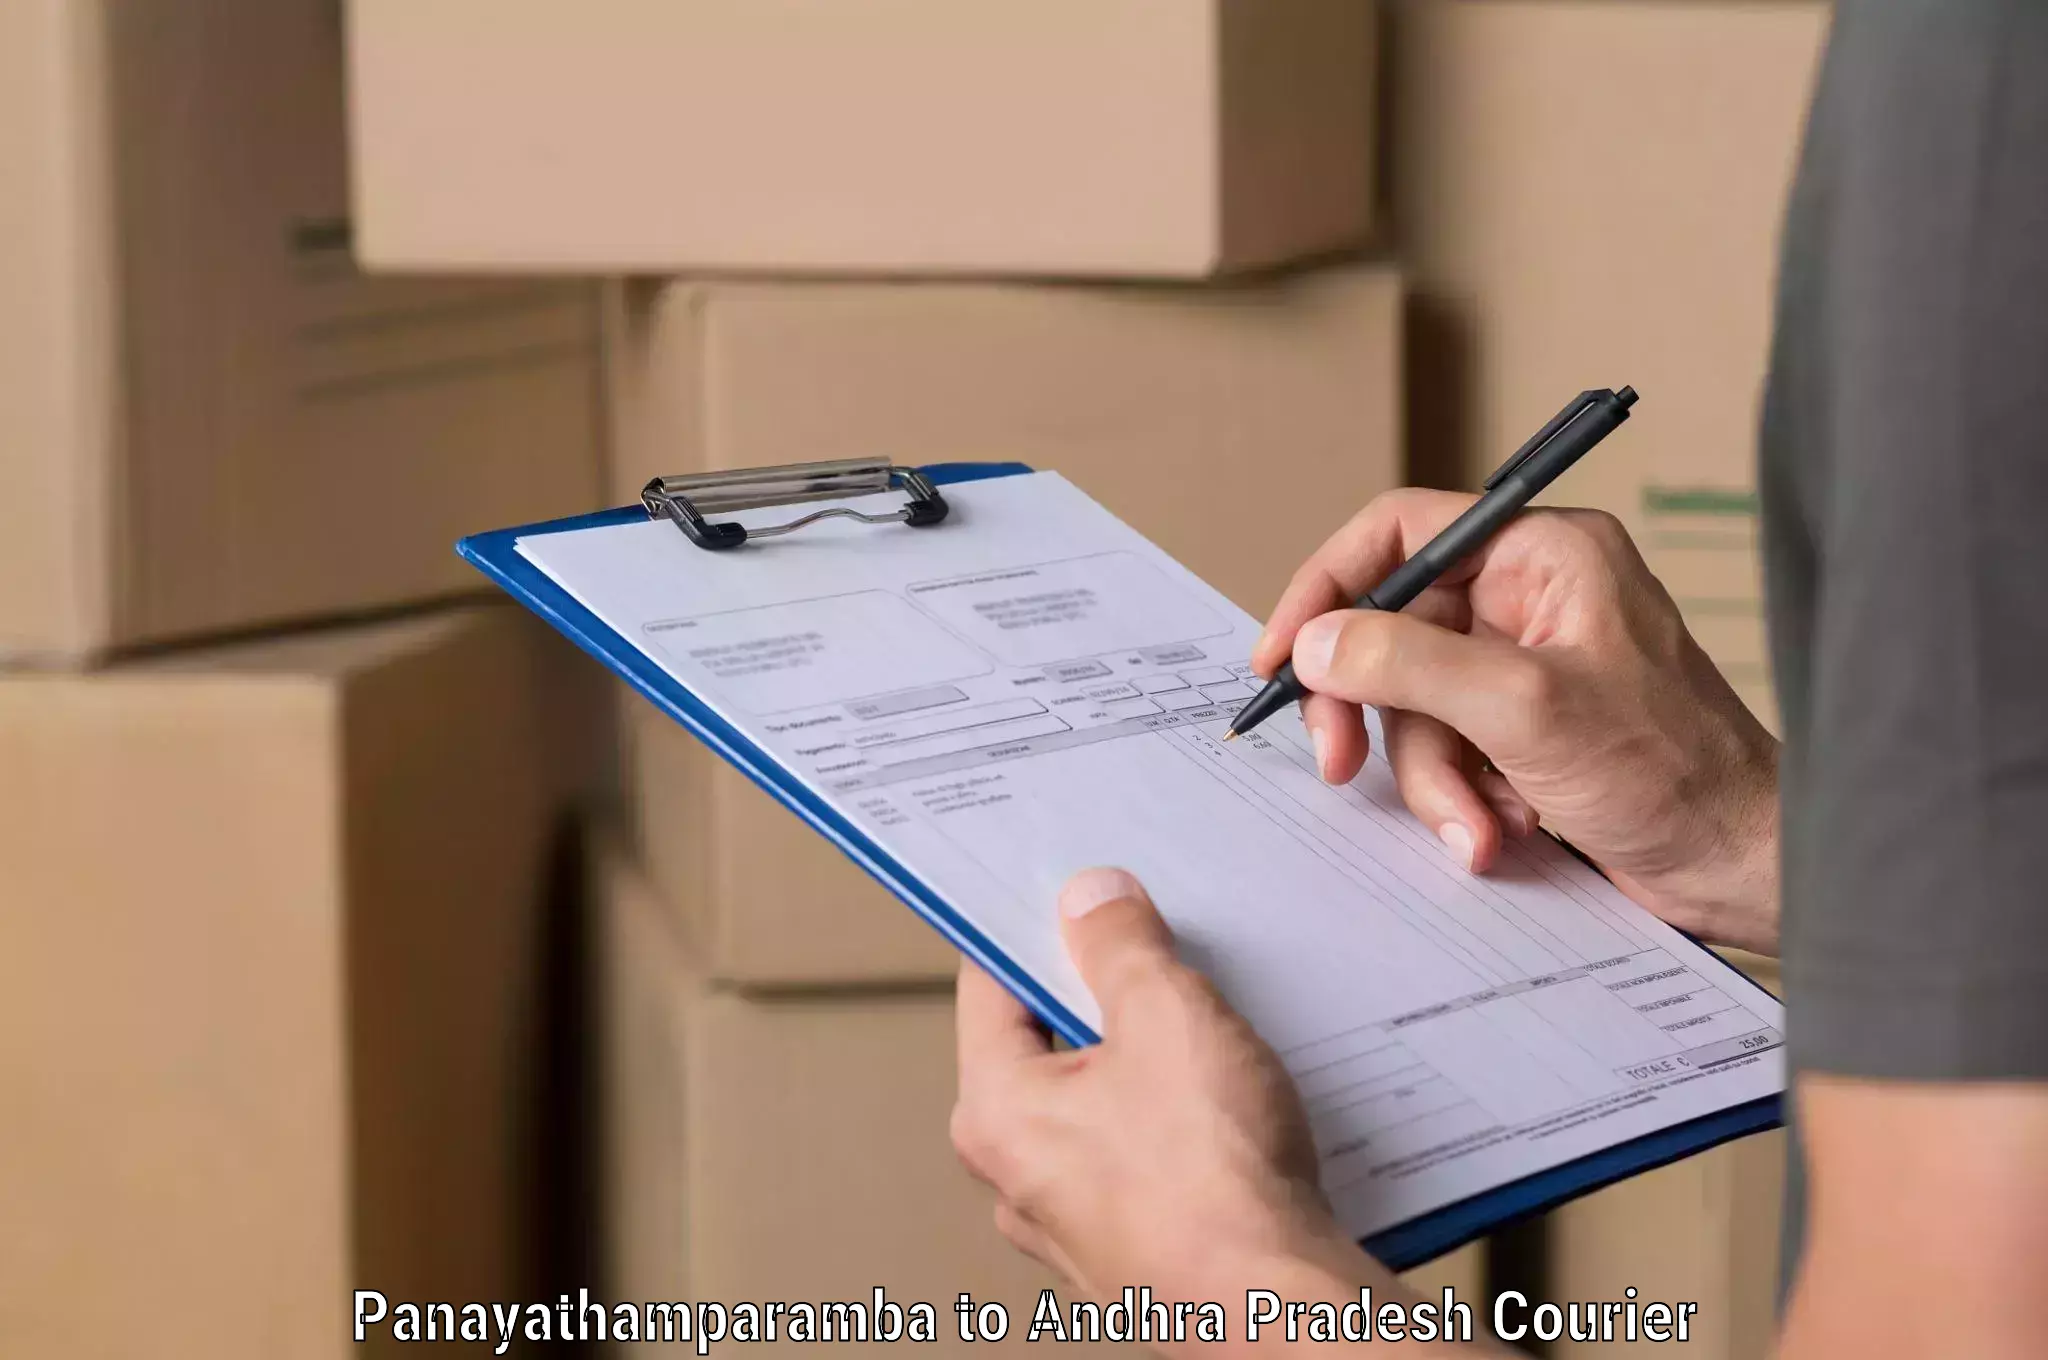 Smart logistics solutions Panayathamparamba to IIT Tirupati